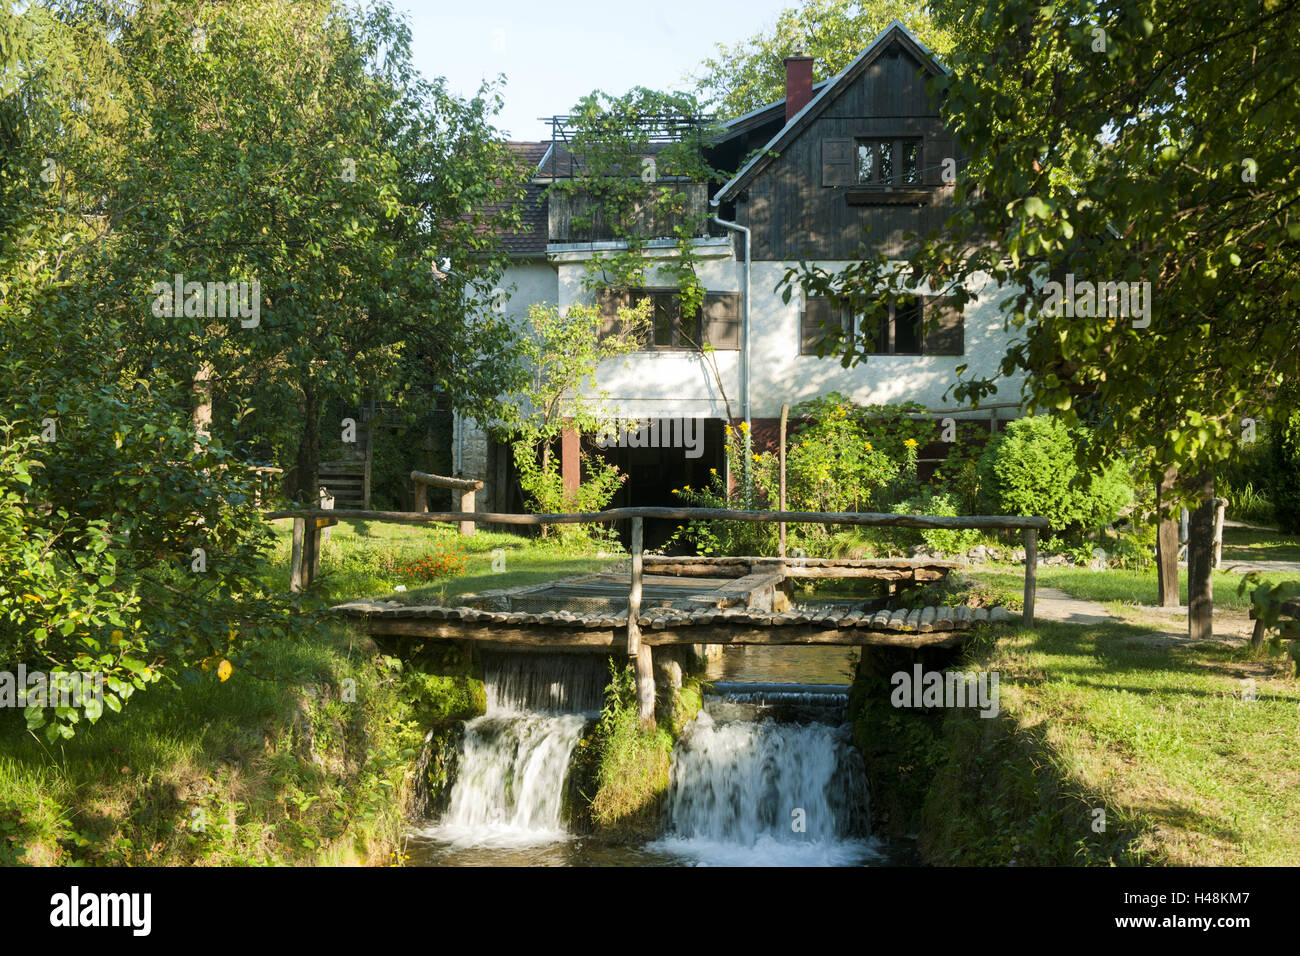 Croatia, Dalmatia, Rastoke with Slunj, house on the river, Stock Photo